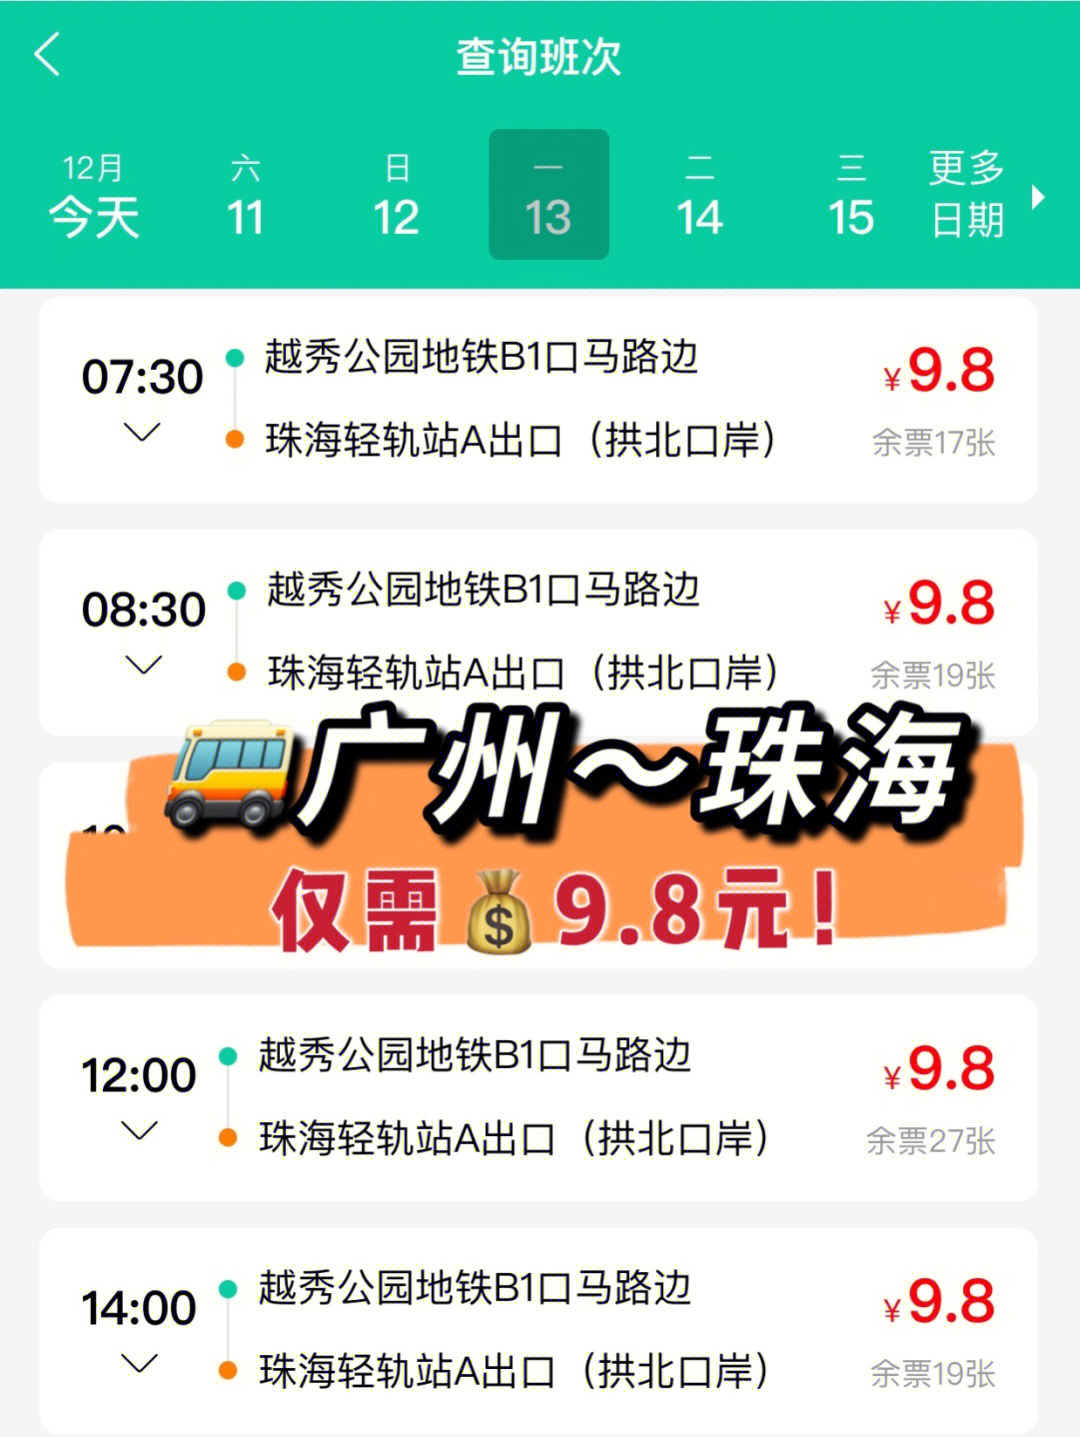 今天(1210)起,信禾巴士增加了99广州